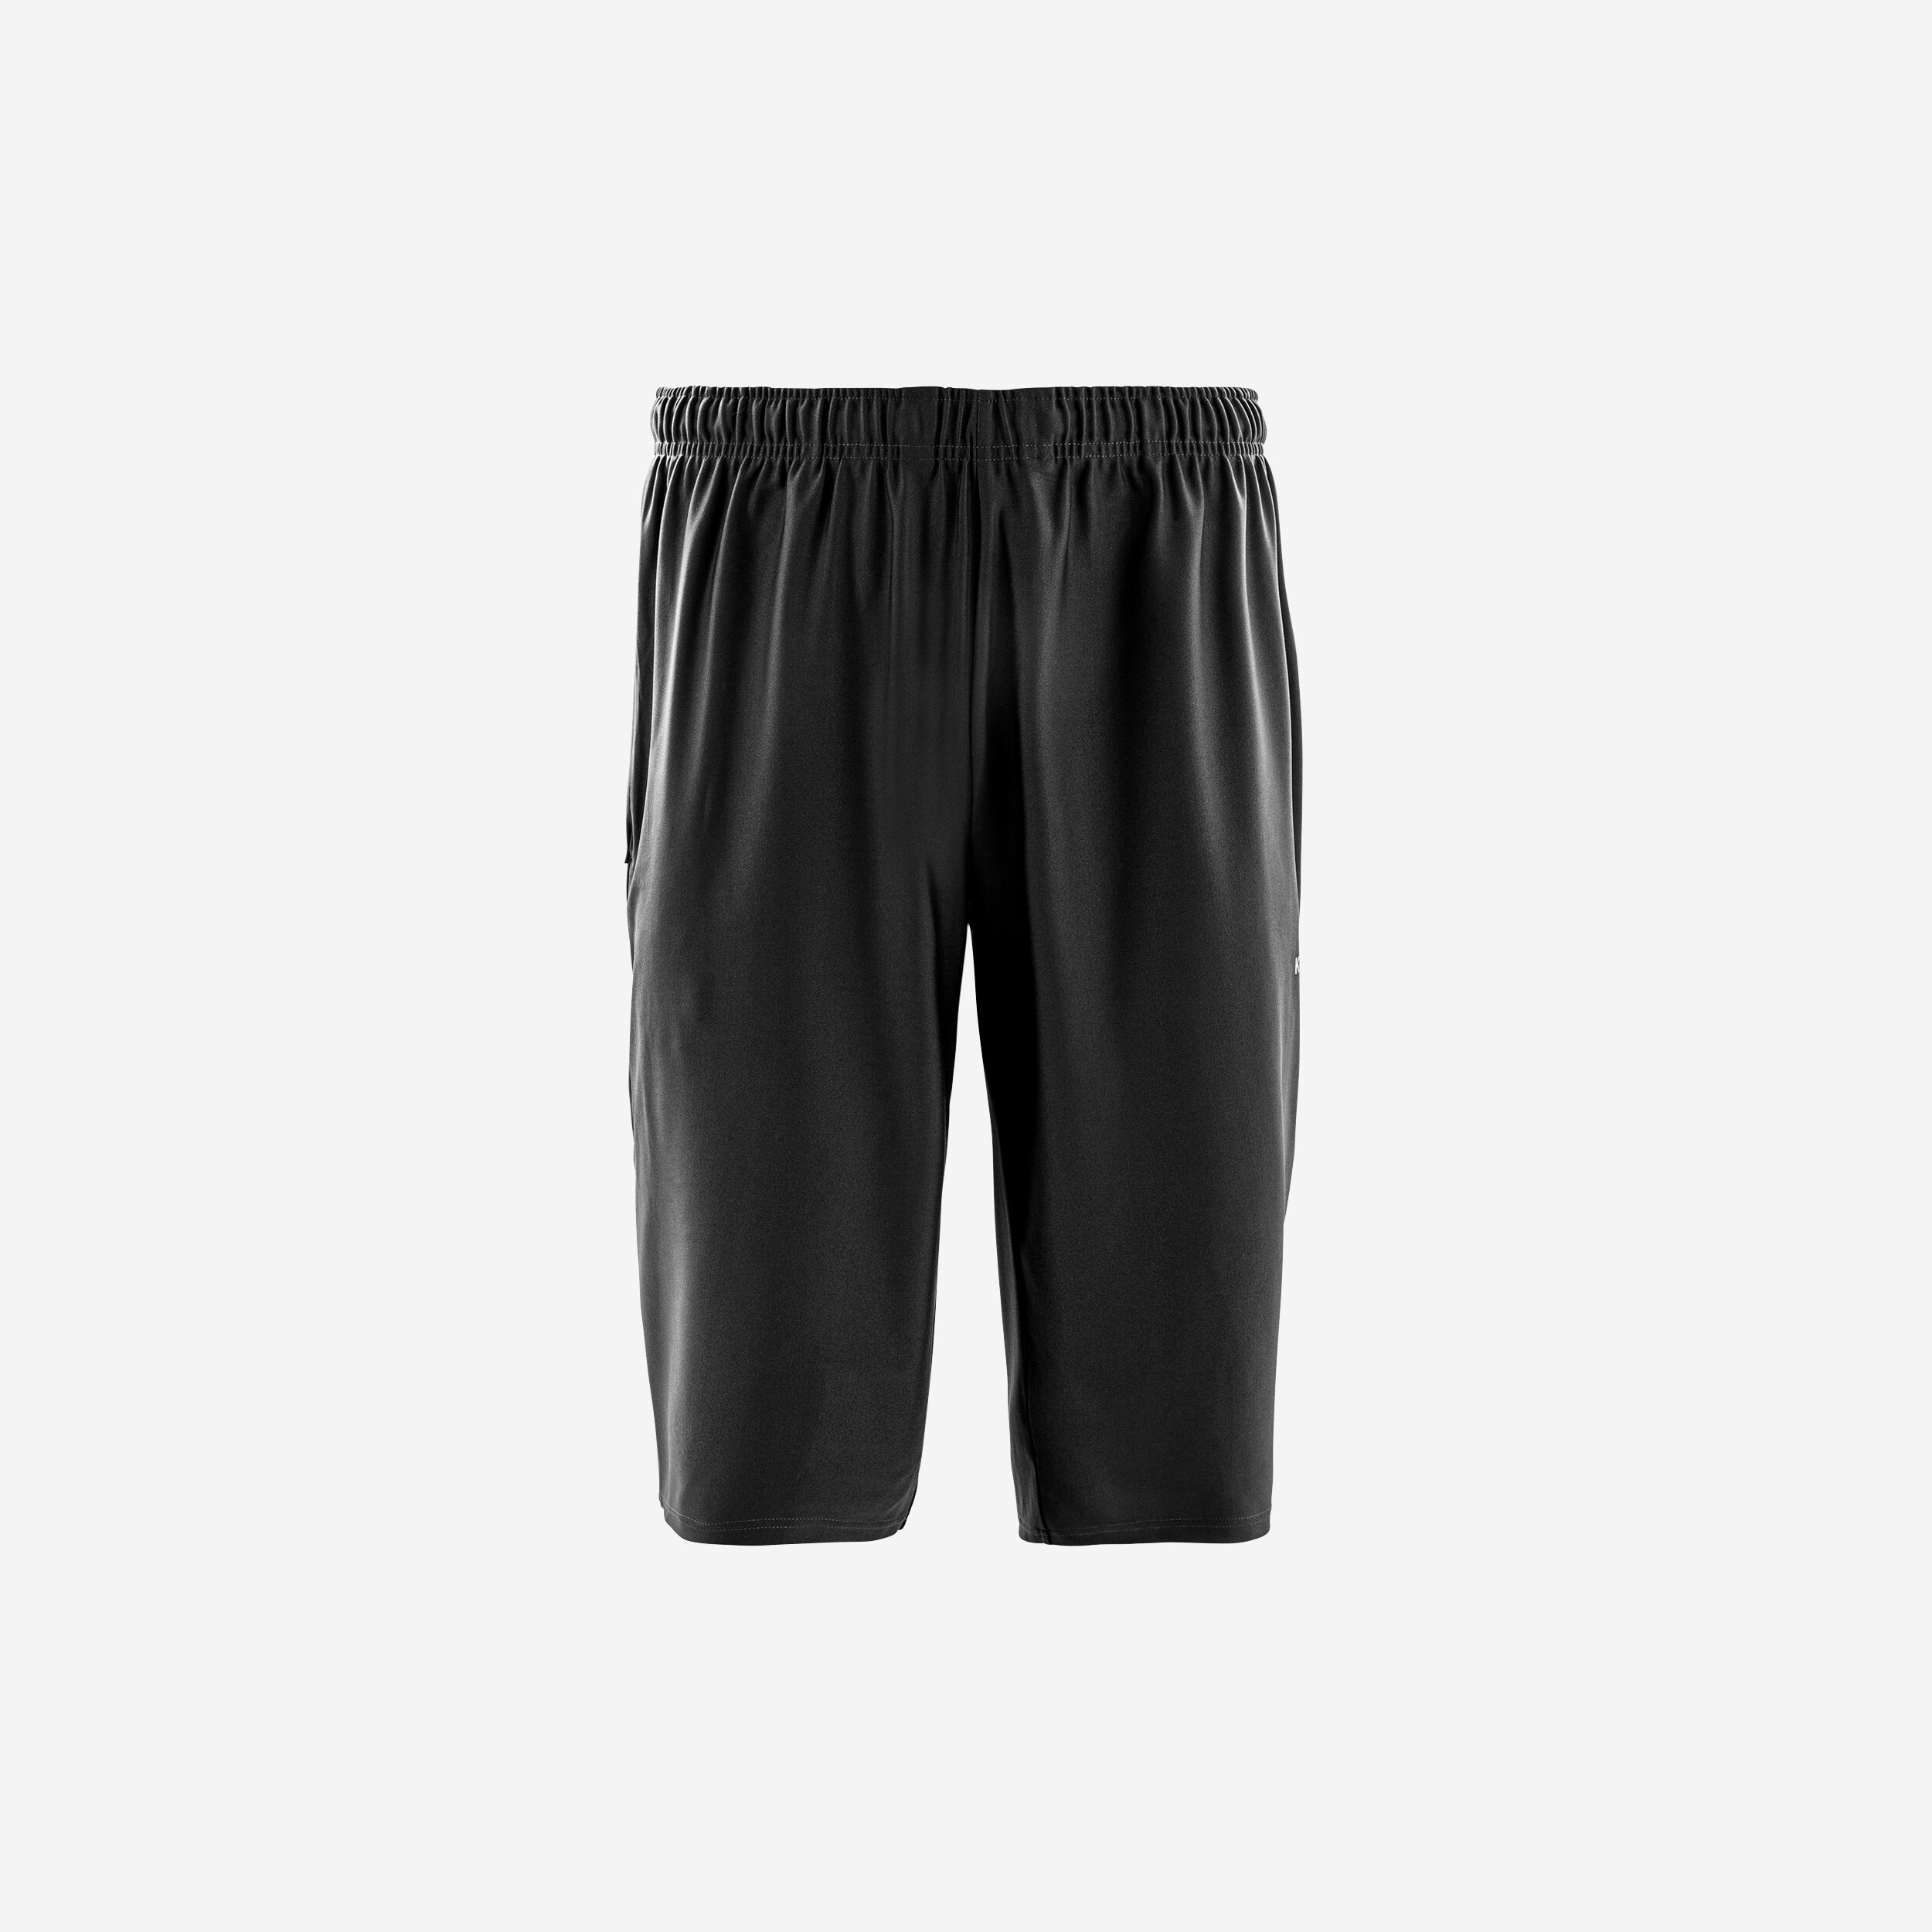 KIPSTA Adult Long Shorts Viralto Club - Green/Carbon Grey